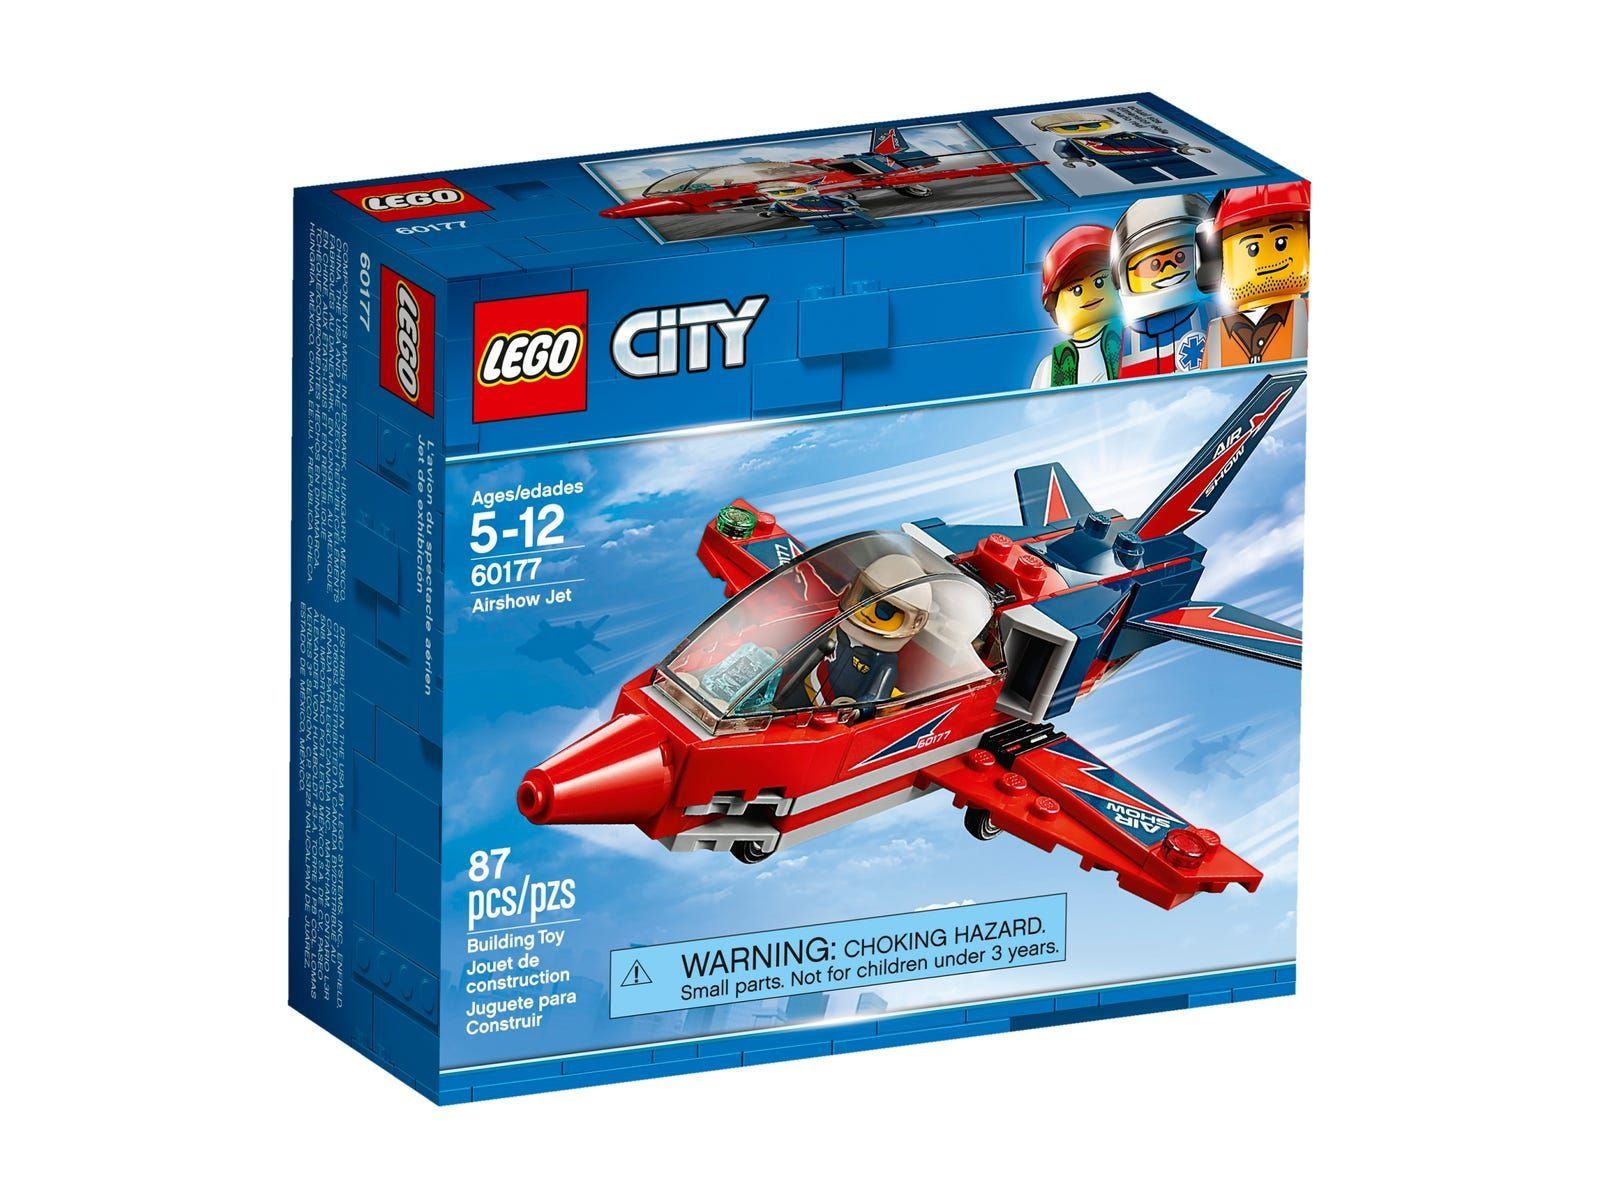 Lego city 60177.